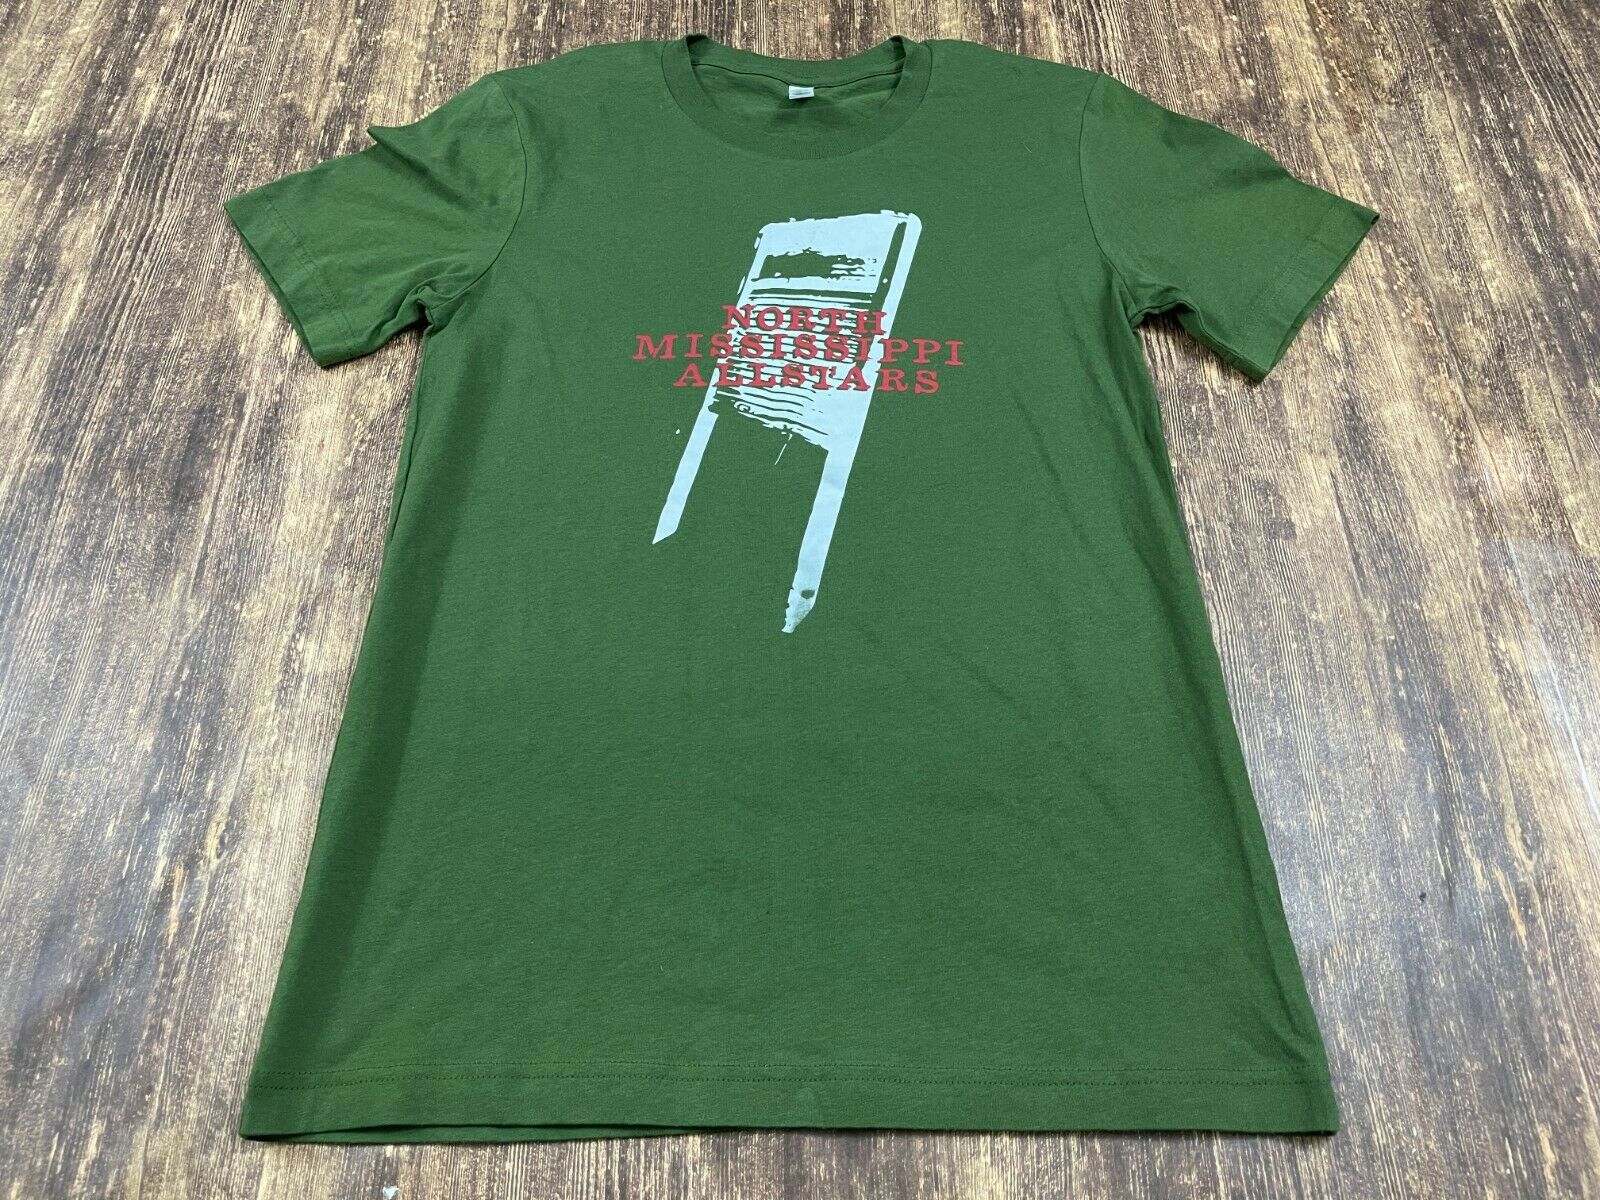 North Mississippi Allstars Men’s Green T-shirt - Small